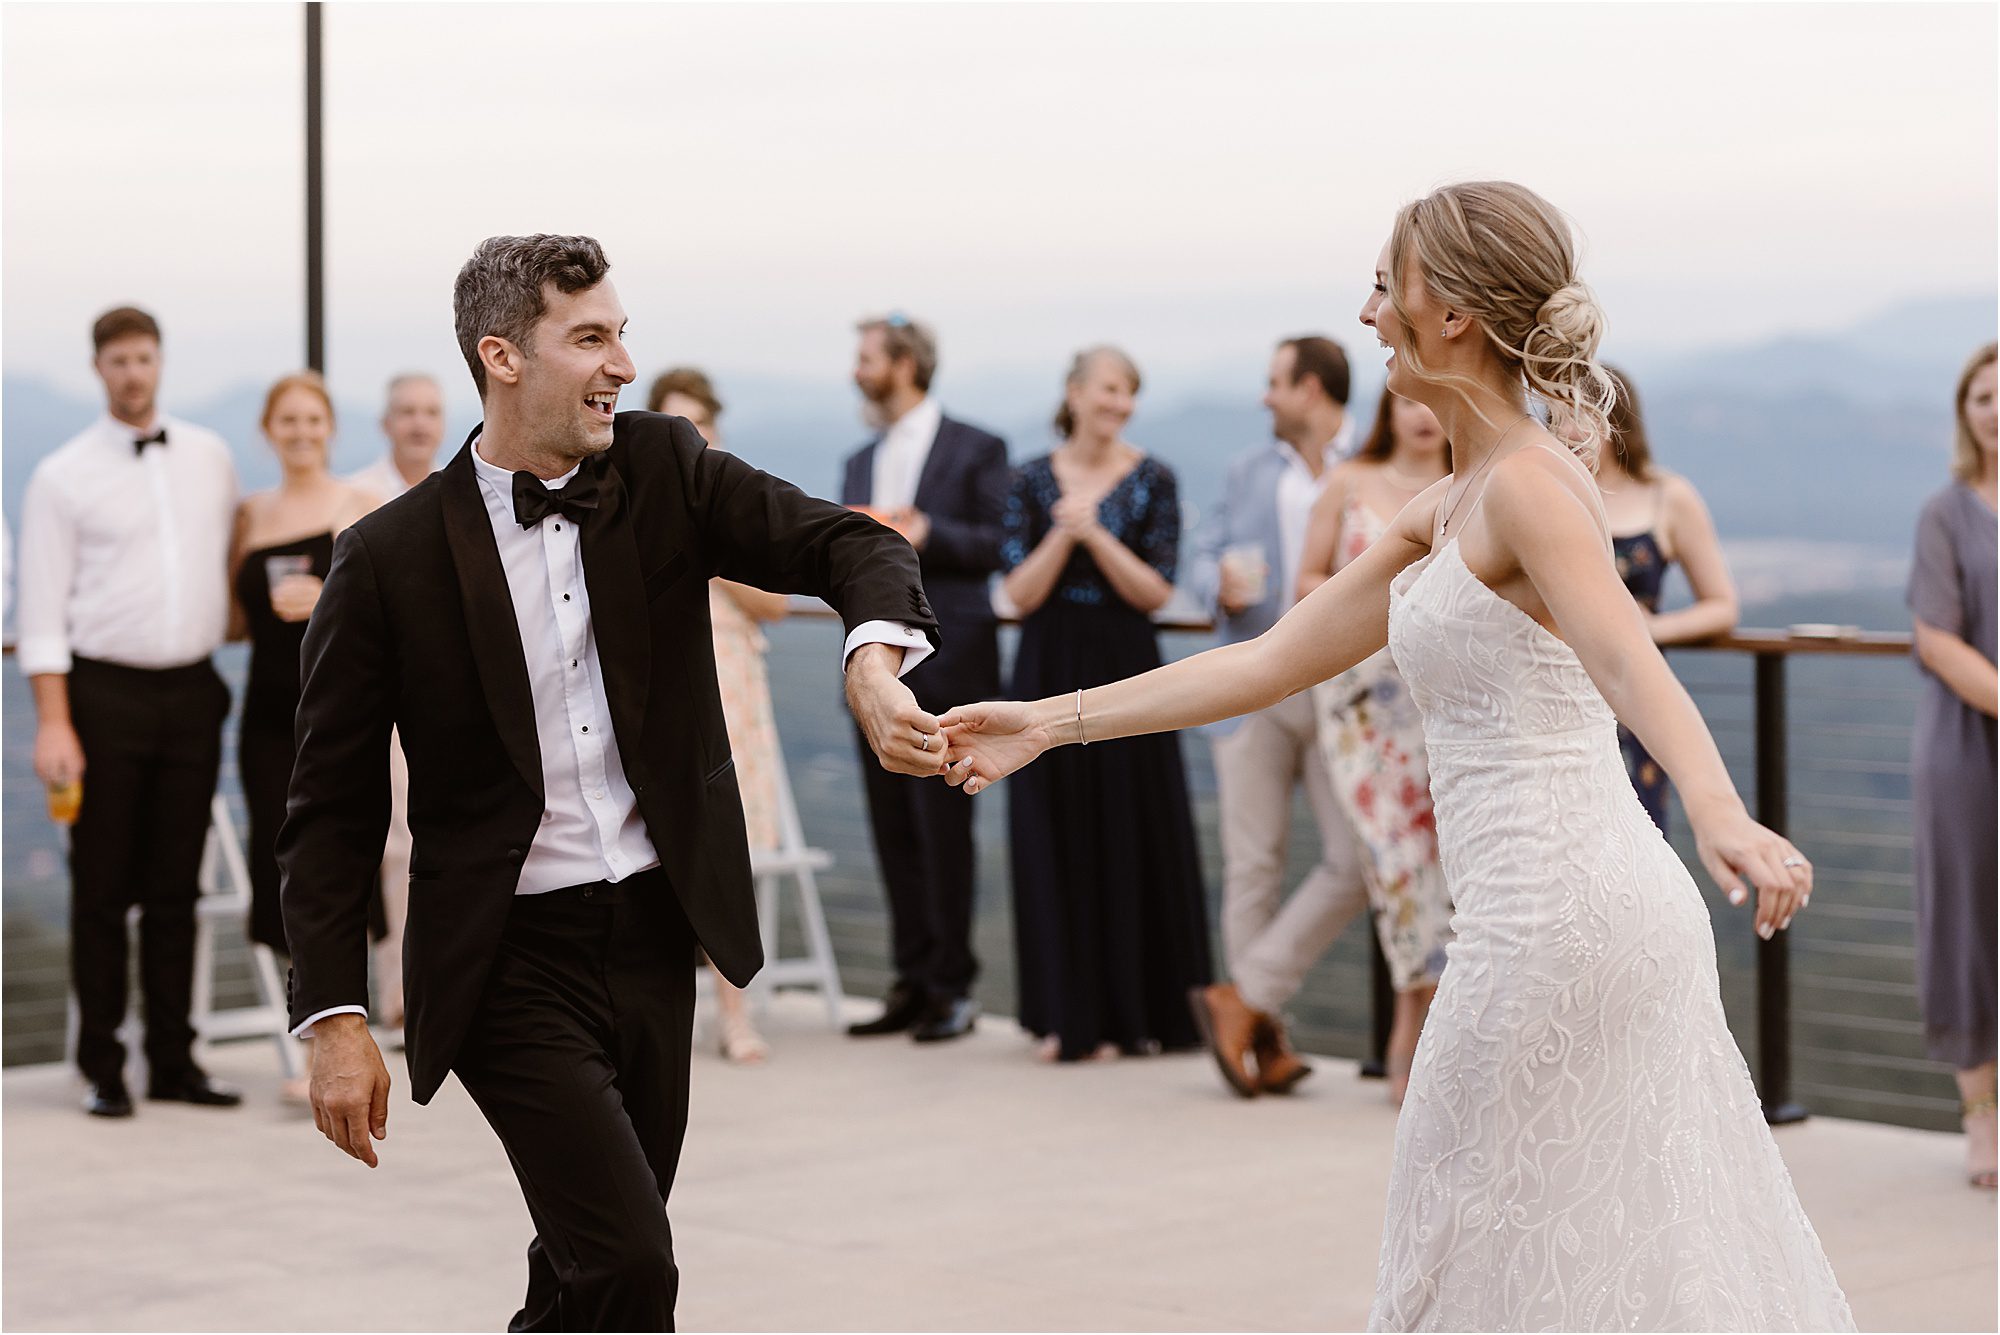 bride and groom dance on dance floor patio